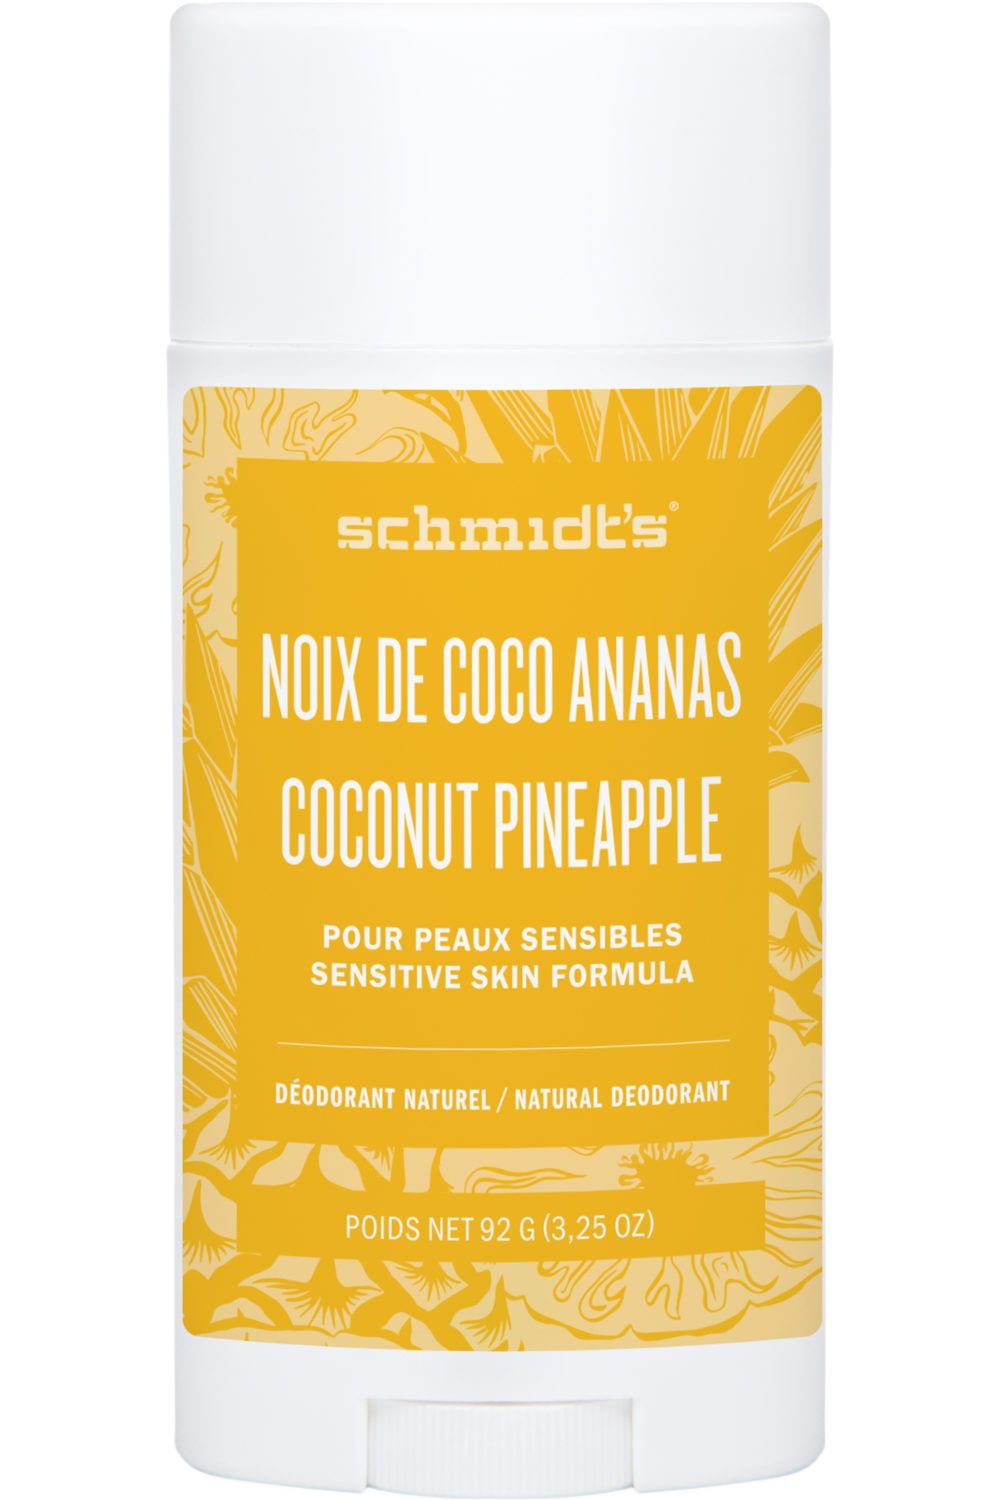 Déodorant naturel pour peaux sensibles à la noix de coco et aux ananas - Schmidt’s